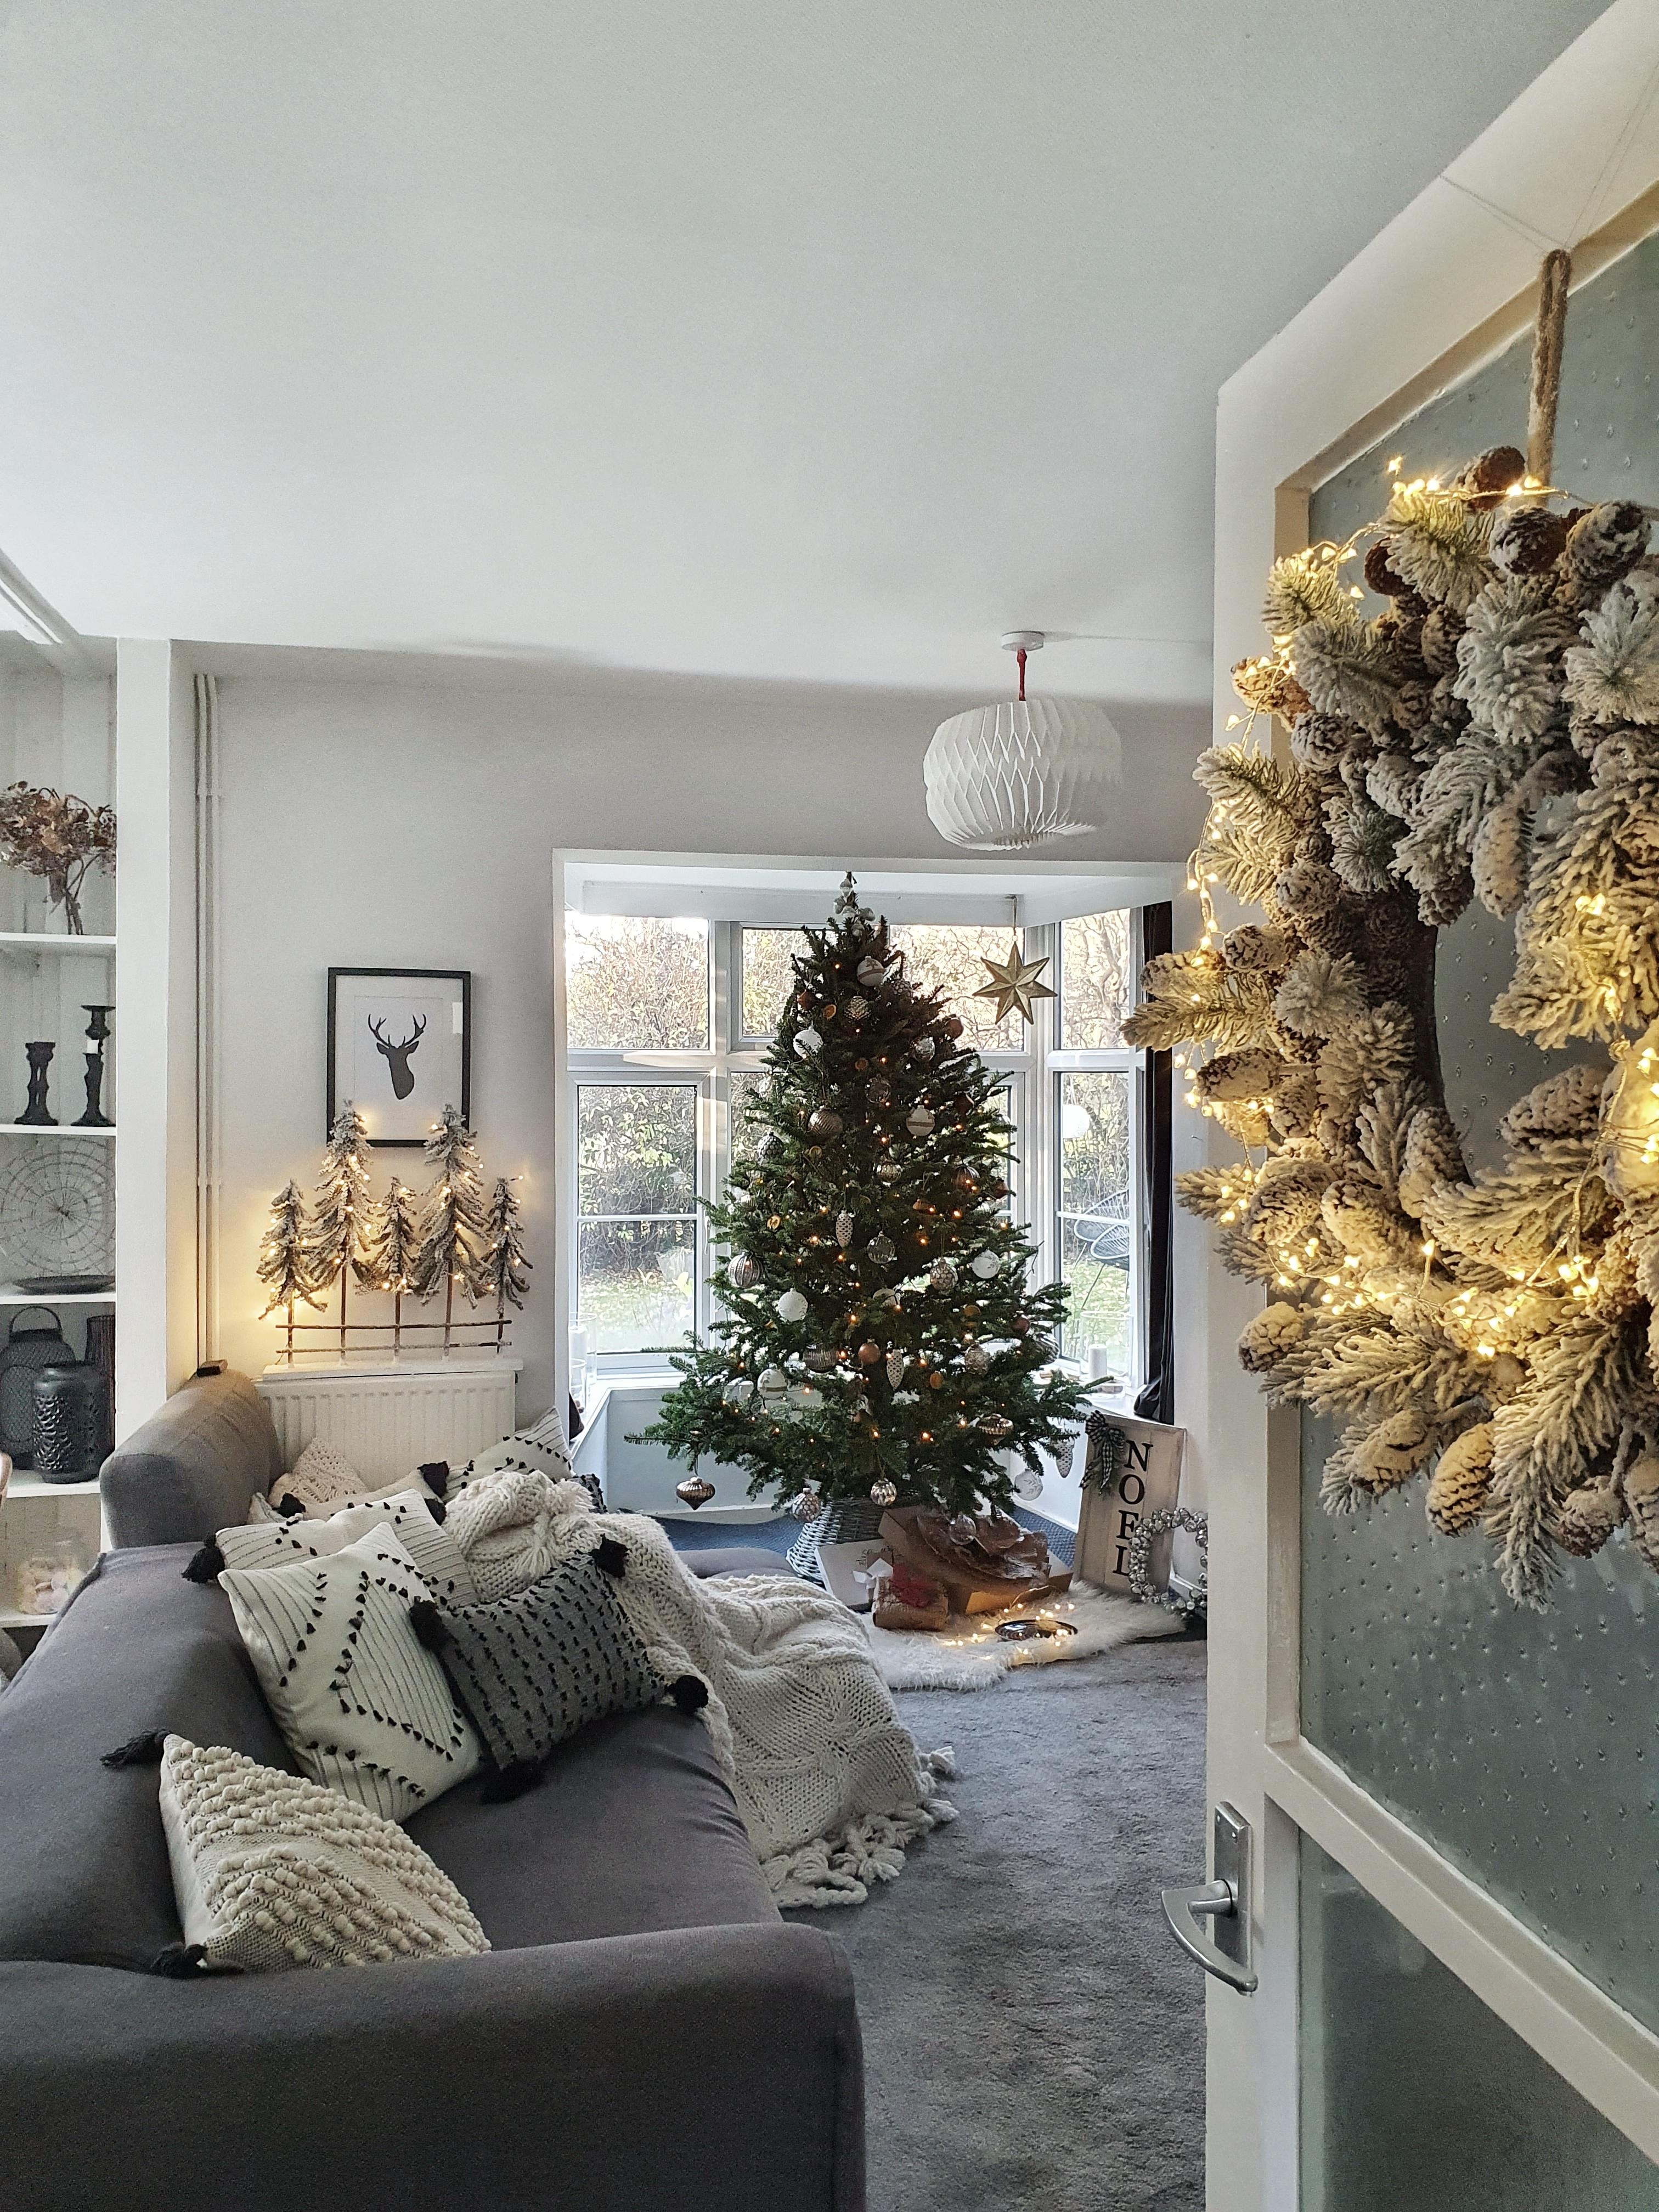 #weihnachtsdeko #weihnachtszeit #weihnachten #interior #hygge #wohnzimmer #couchliebt #altbau #cozy